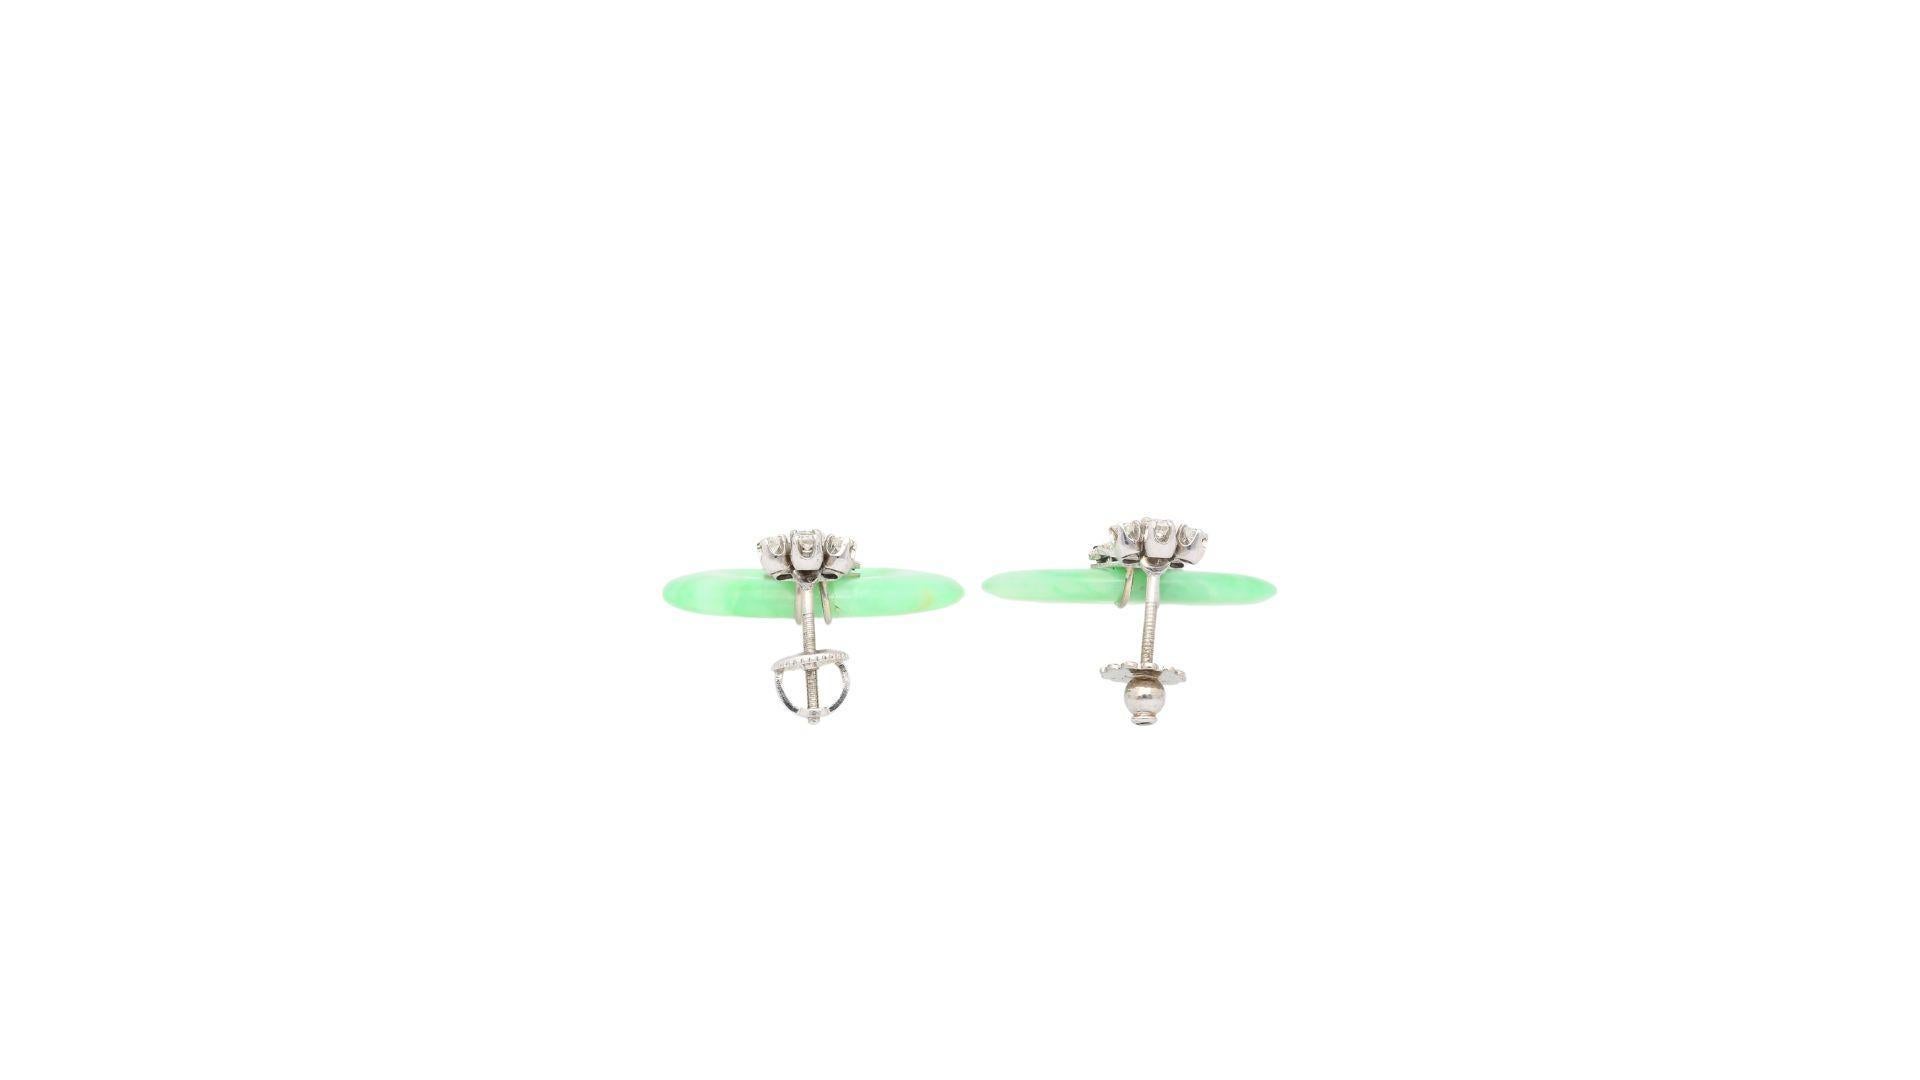 Vintage Jade, Diamant & Saphir Tropfen Ohrringe in 14K Weißgold. 

Dieses Set aus Vintage-Ohrringen besteht aus einem Jadeit-Jade-Edelstein, in den ein Donut geschnitzt wurde. Die Jade ist mit zusätzlichen runden Diamanten gepaart, die in einer